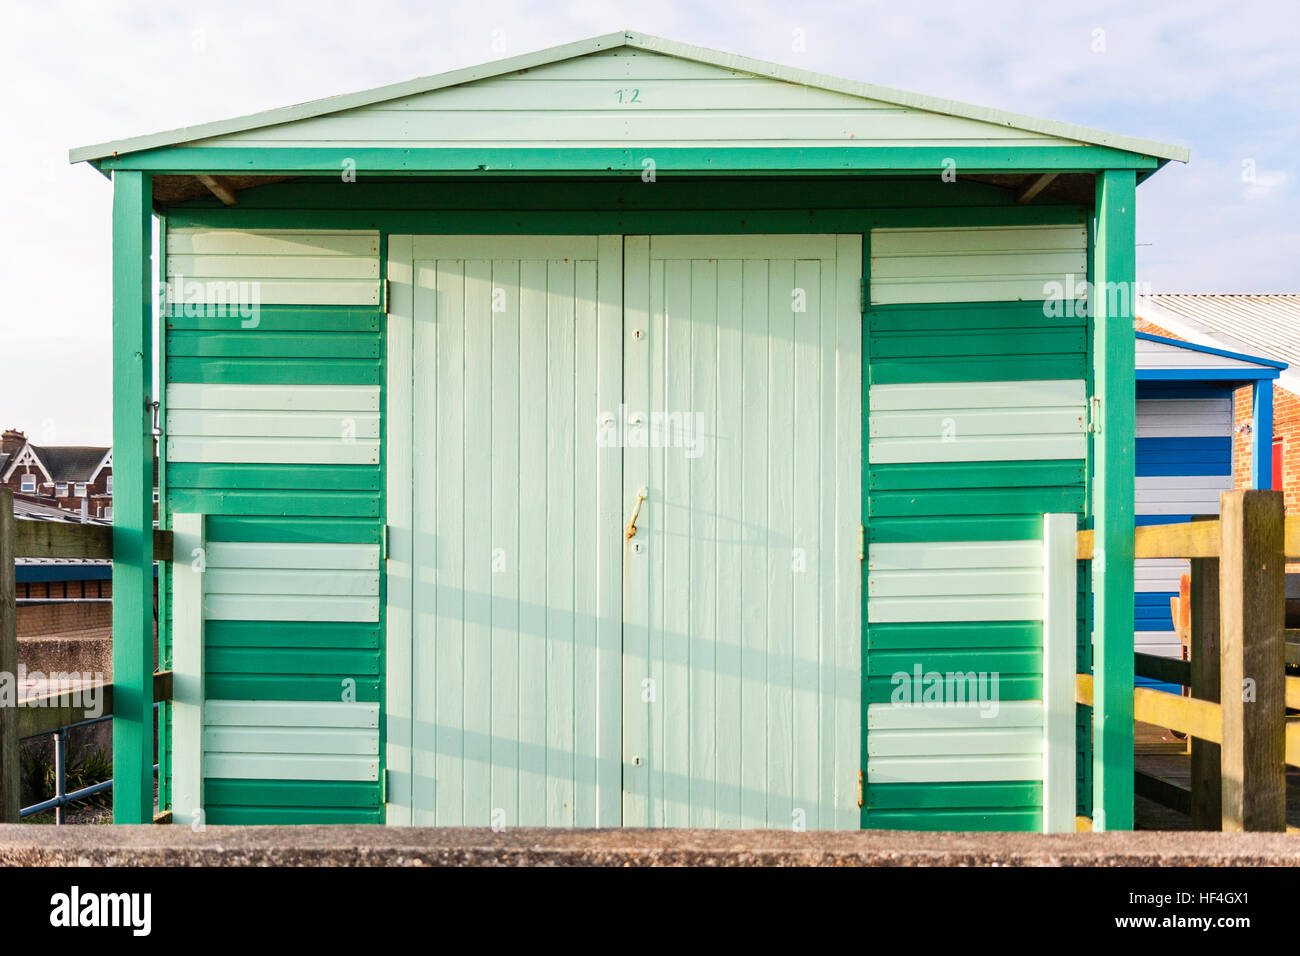 England, Whitstable. Hütte am Meer, lackiert in zwei Schattierungen von Grün, gesperrt. Vorderansicht. Stockfoto